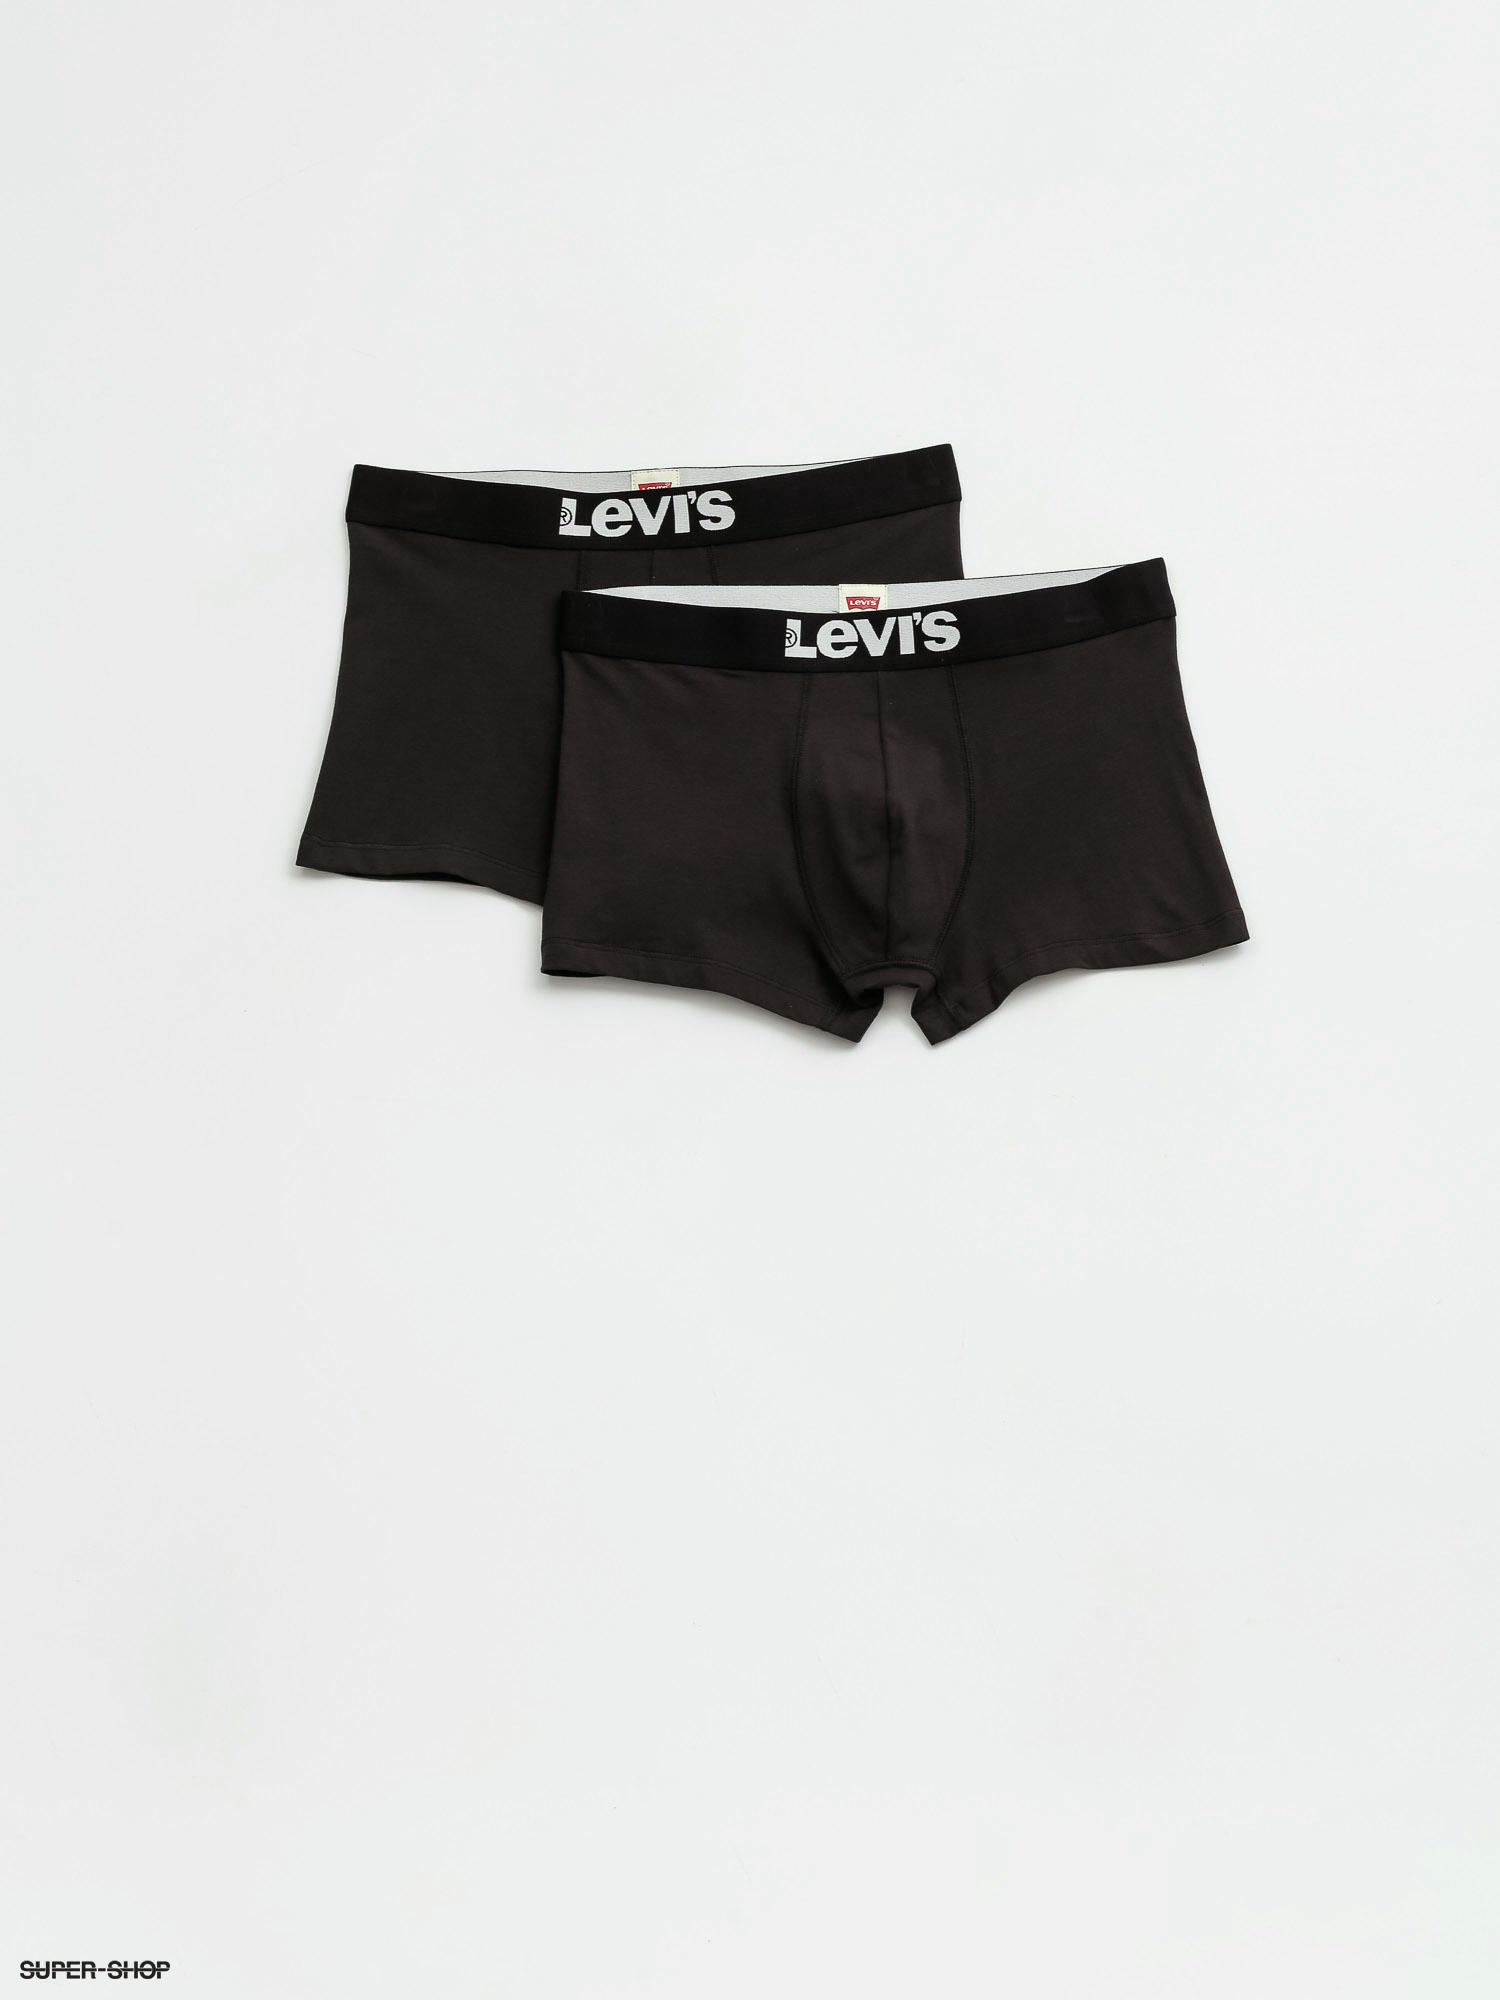 levis trunks underwear